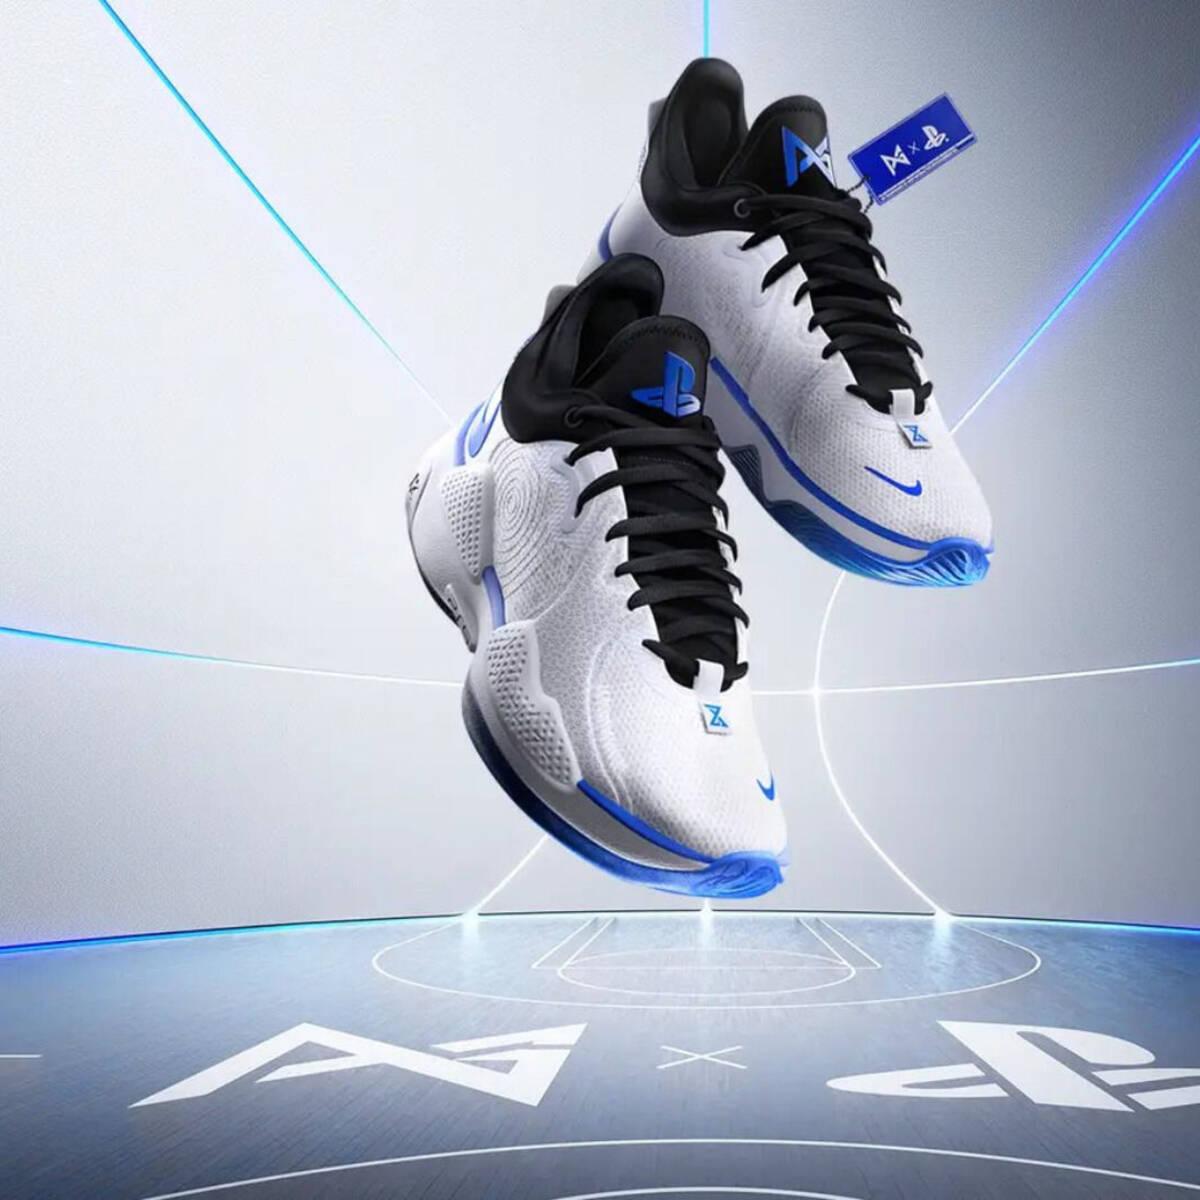 Las zapatillas de Nike inspiradas en muestran un nuevo vídeo promocional - Vandal